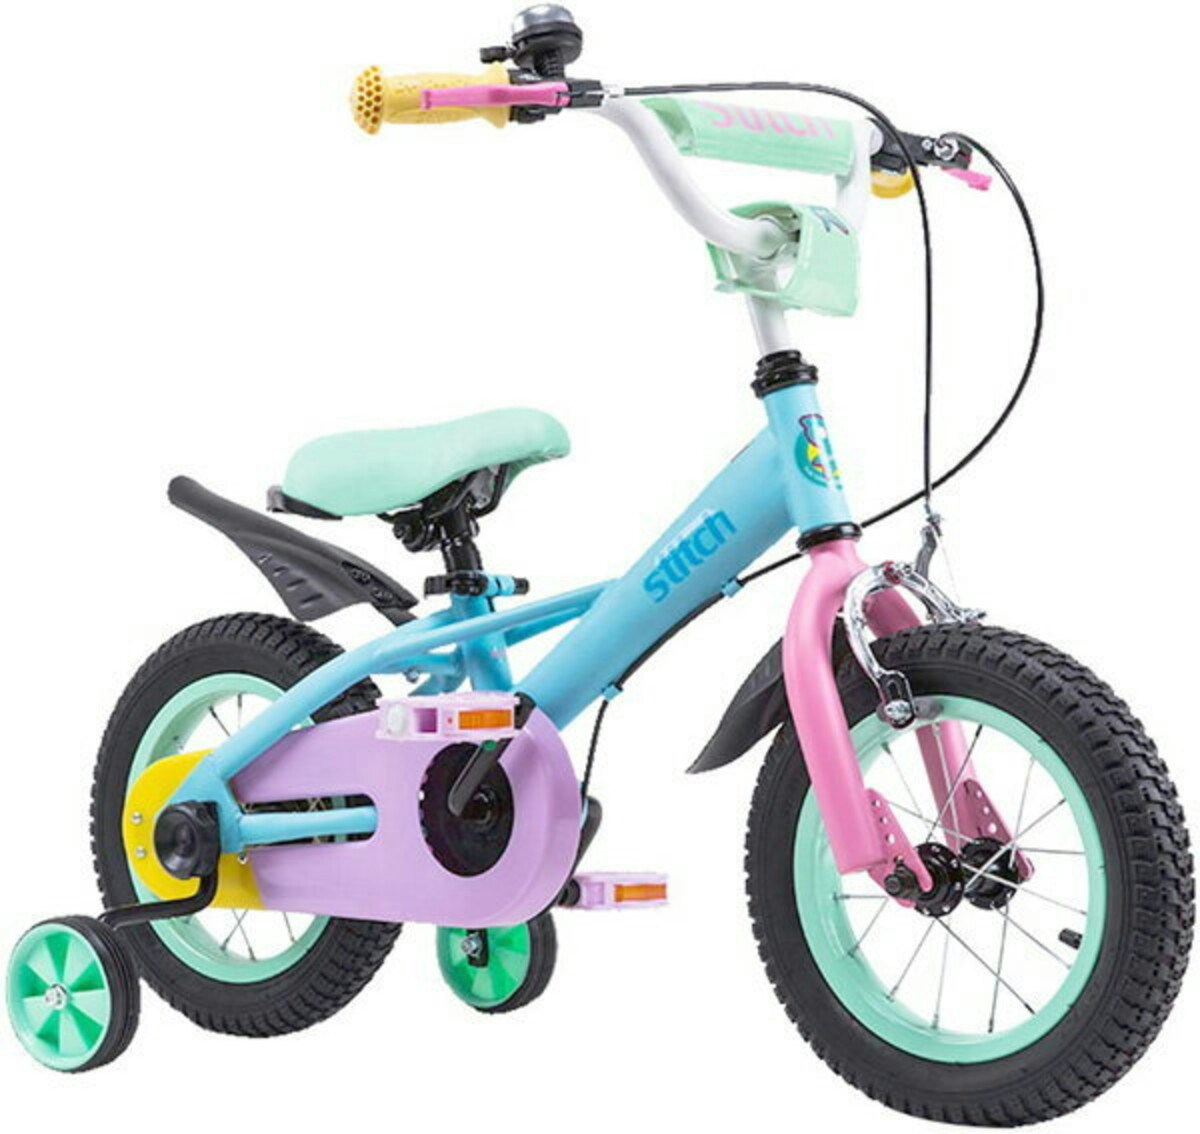 「補助輪付き子ども用自転車」